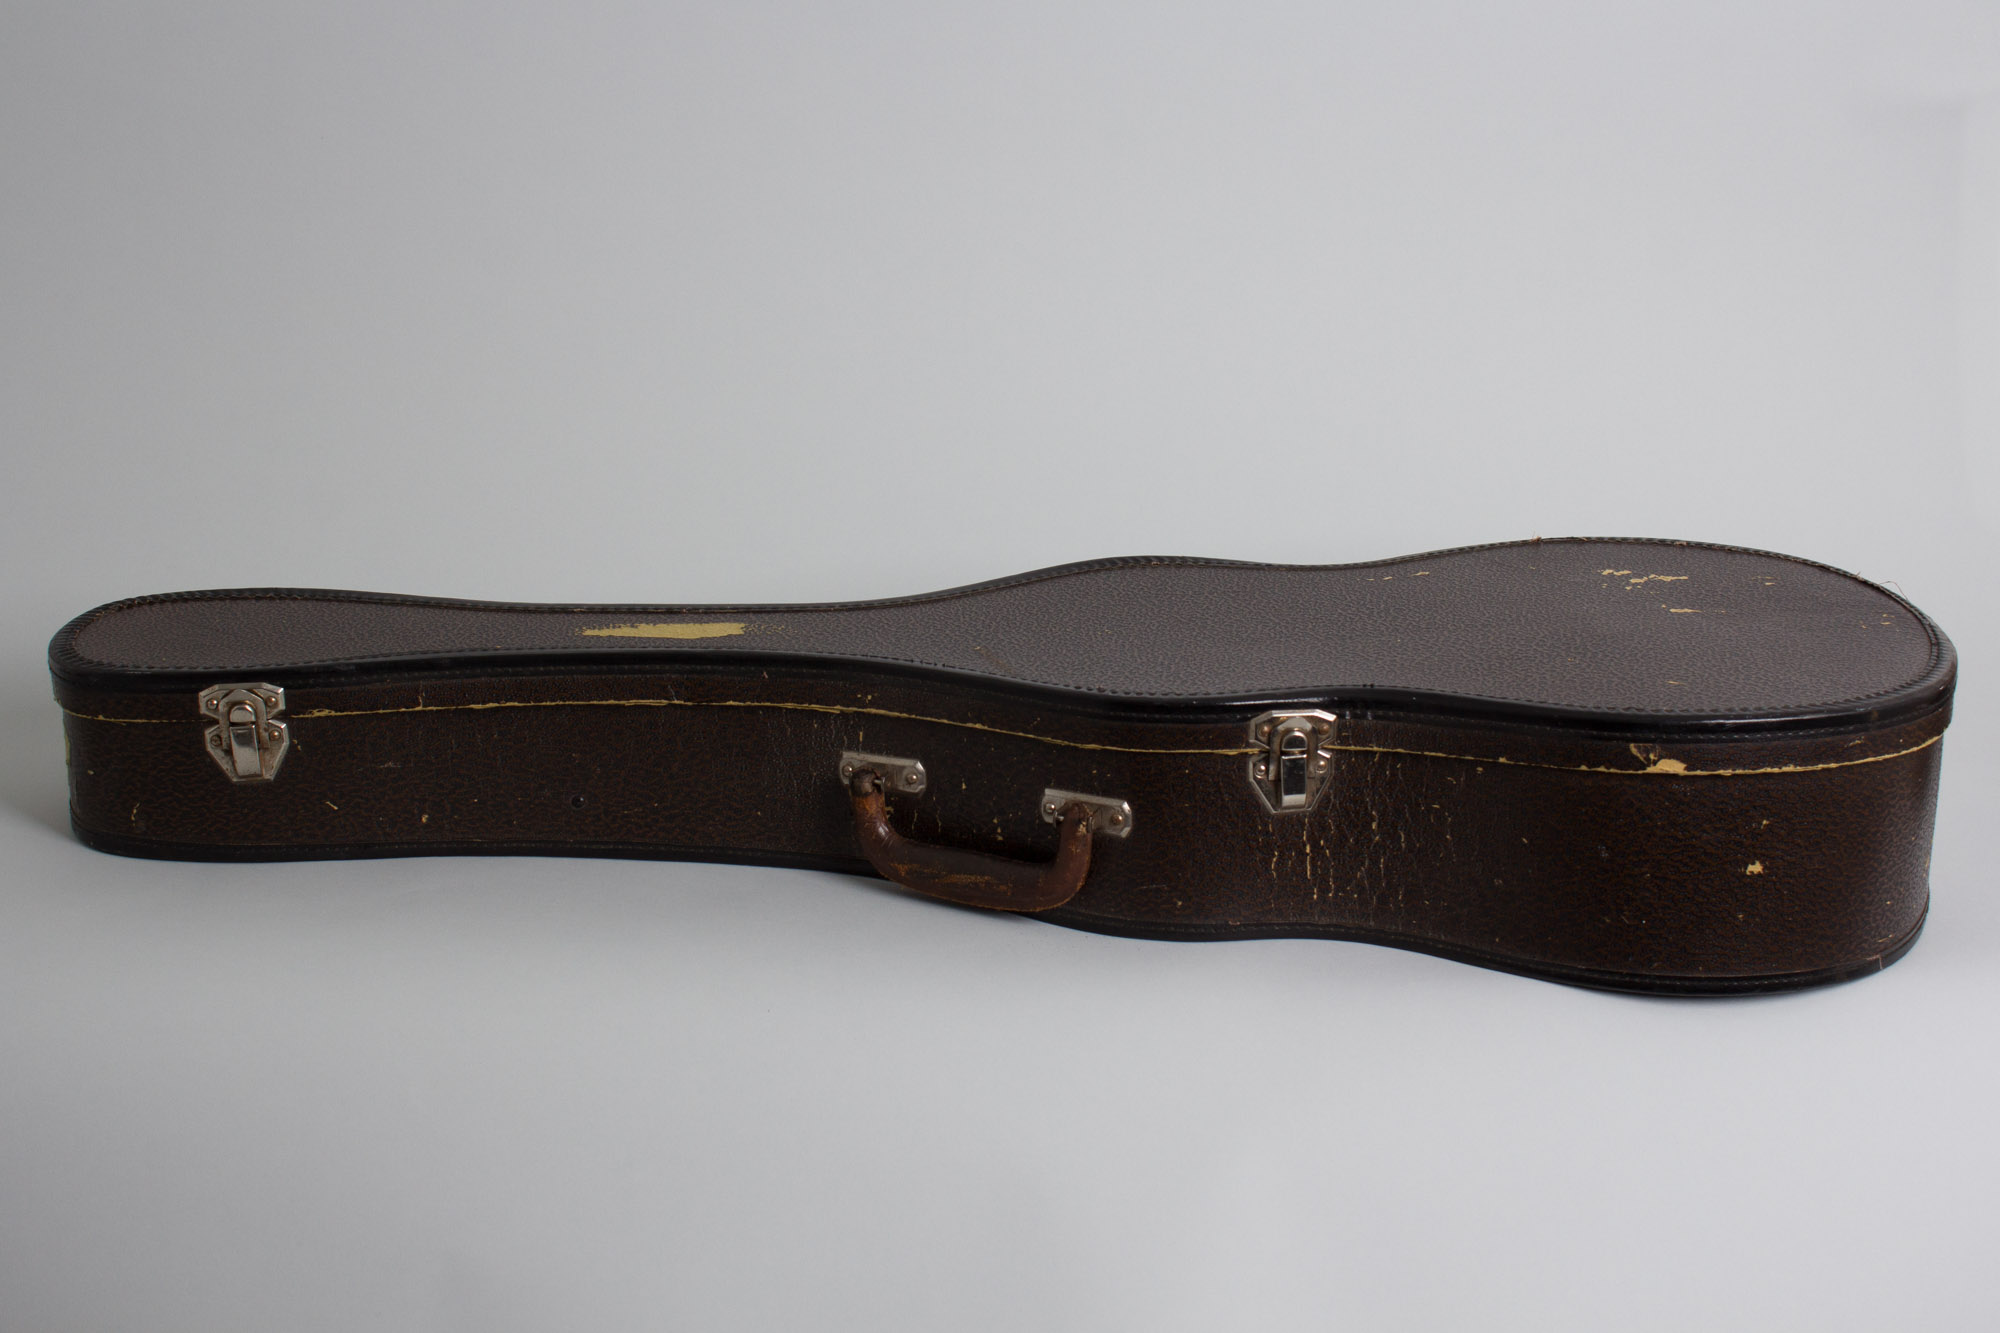 1939 Kalamazoo KG 3/4 Sport – Garrett Park Guitars